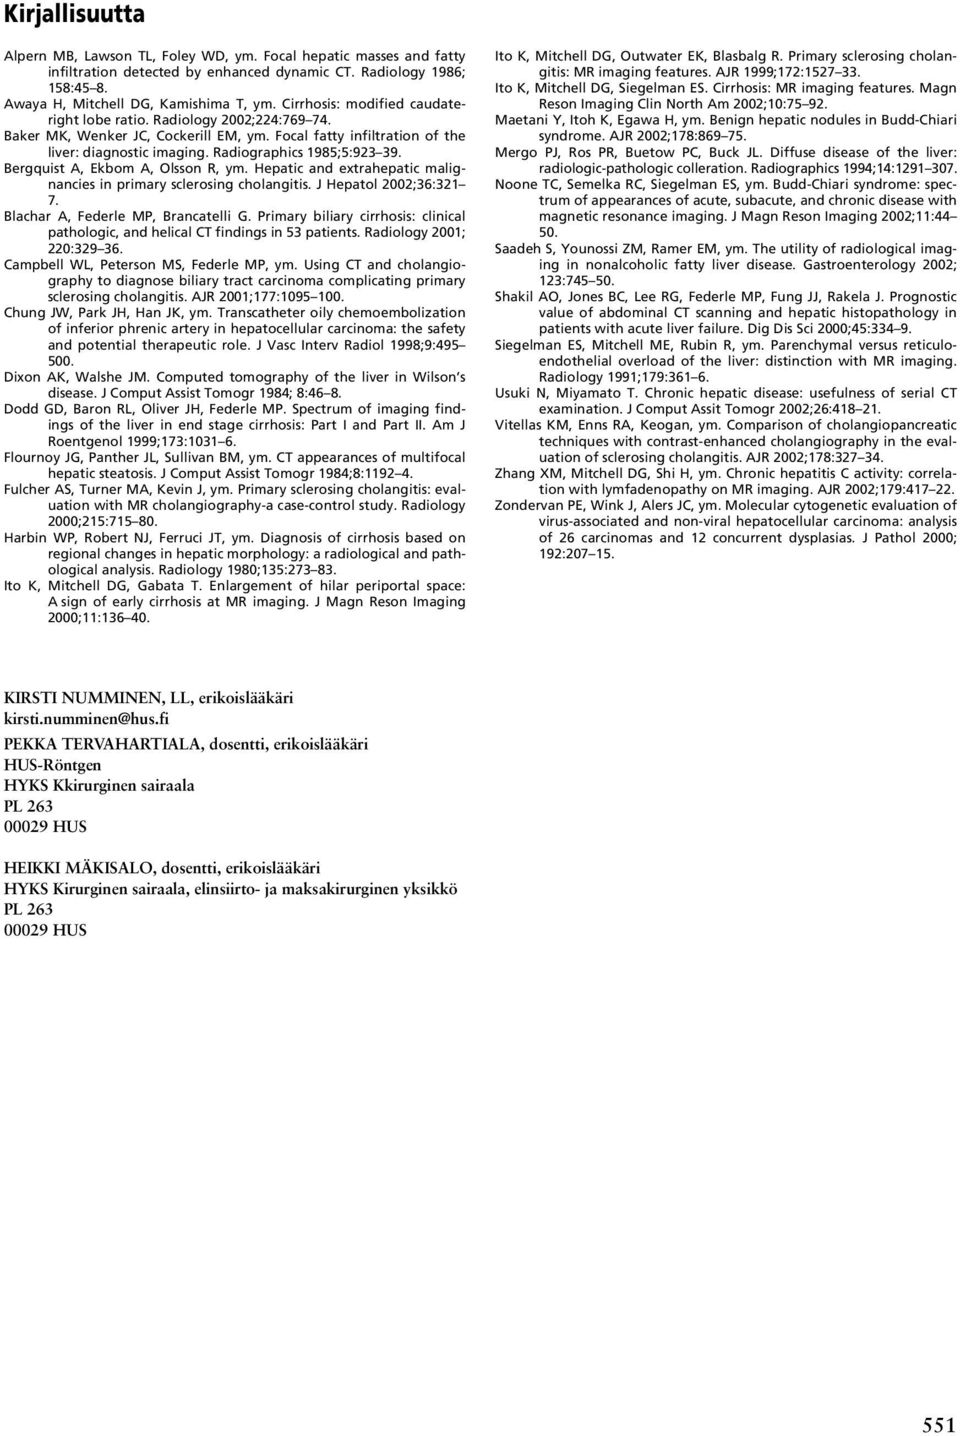 Bergquist A, Ekbom A, Olsson R, ym. Hepatic and extrahepatic malignancies in primary sclerosing cholangitis. J Hepatol 2002;36:321 7. Blachar A, Federle MP, Brancatelli G.